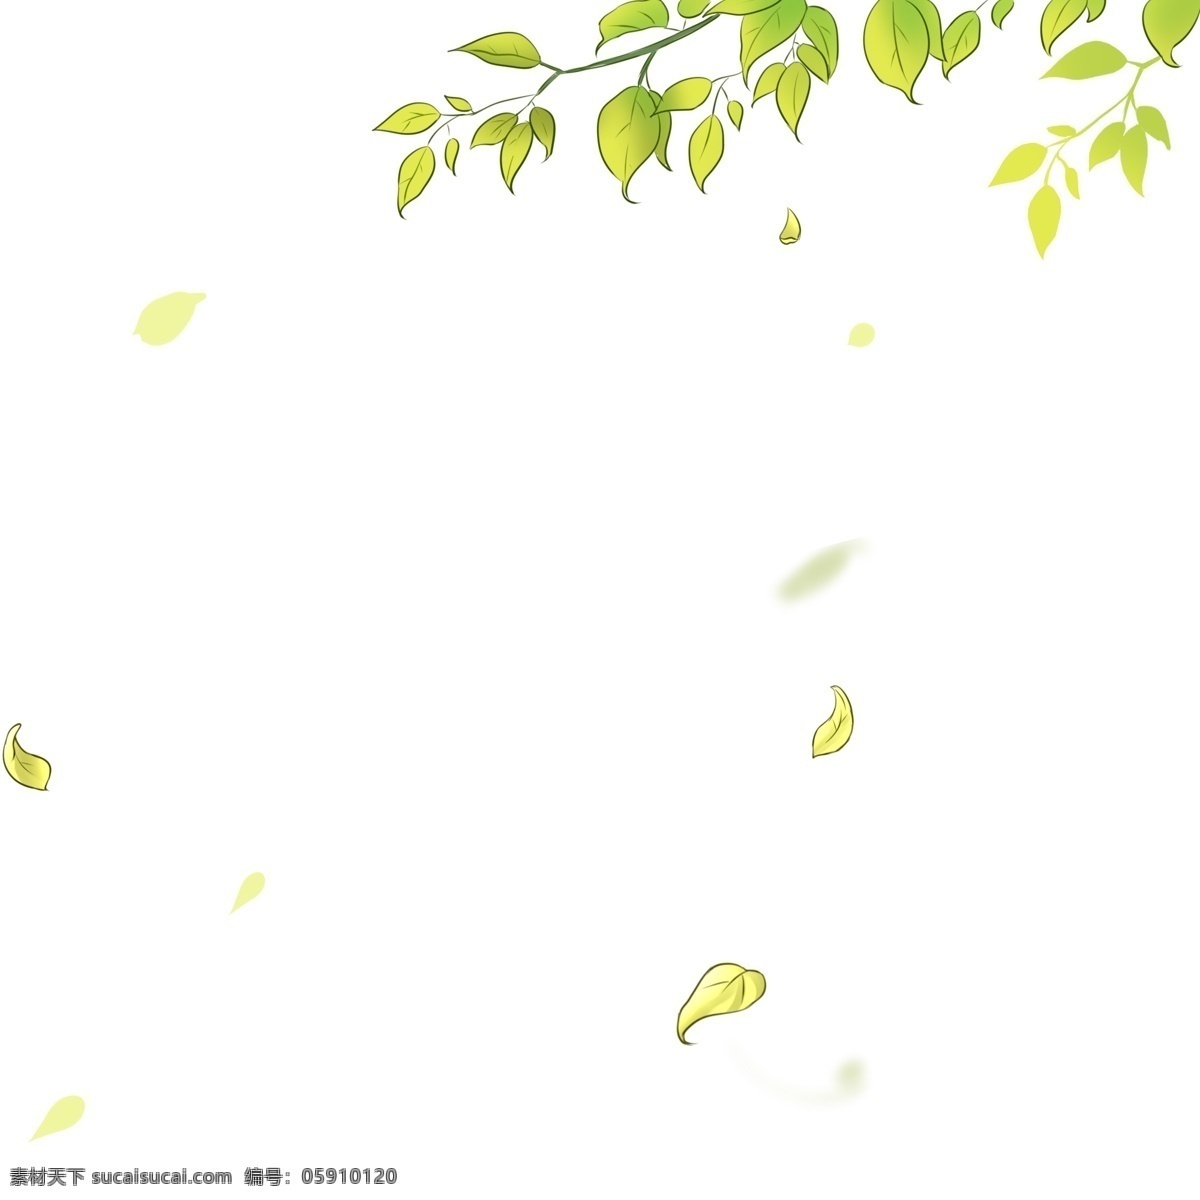 风吹 落叶 手绘 背景 树叶 树枝 树木 漂浮 绿化 矢量 插画 卡通 绿色叶子 装饰 海报装饰